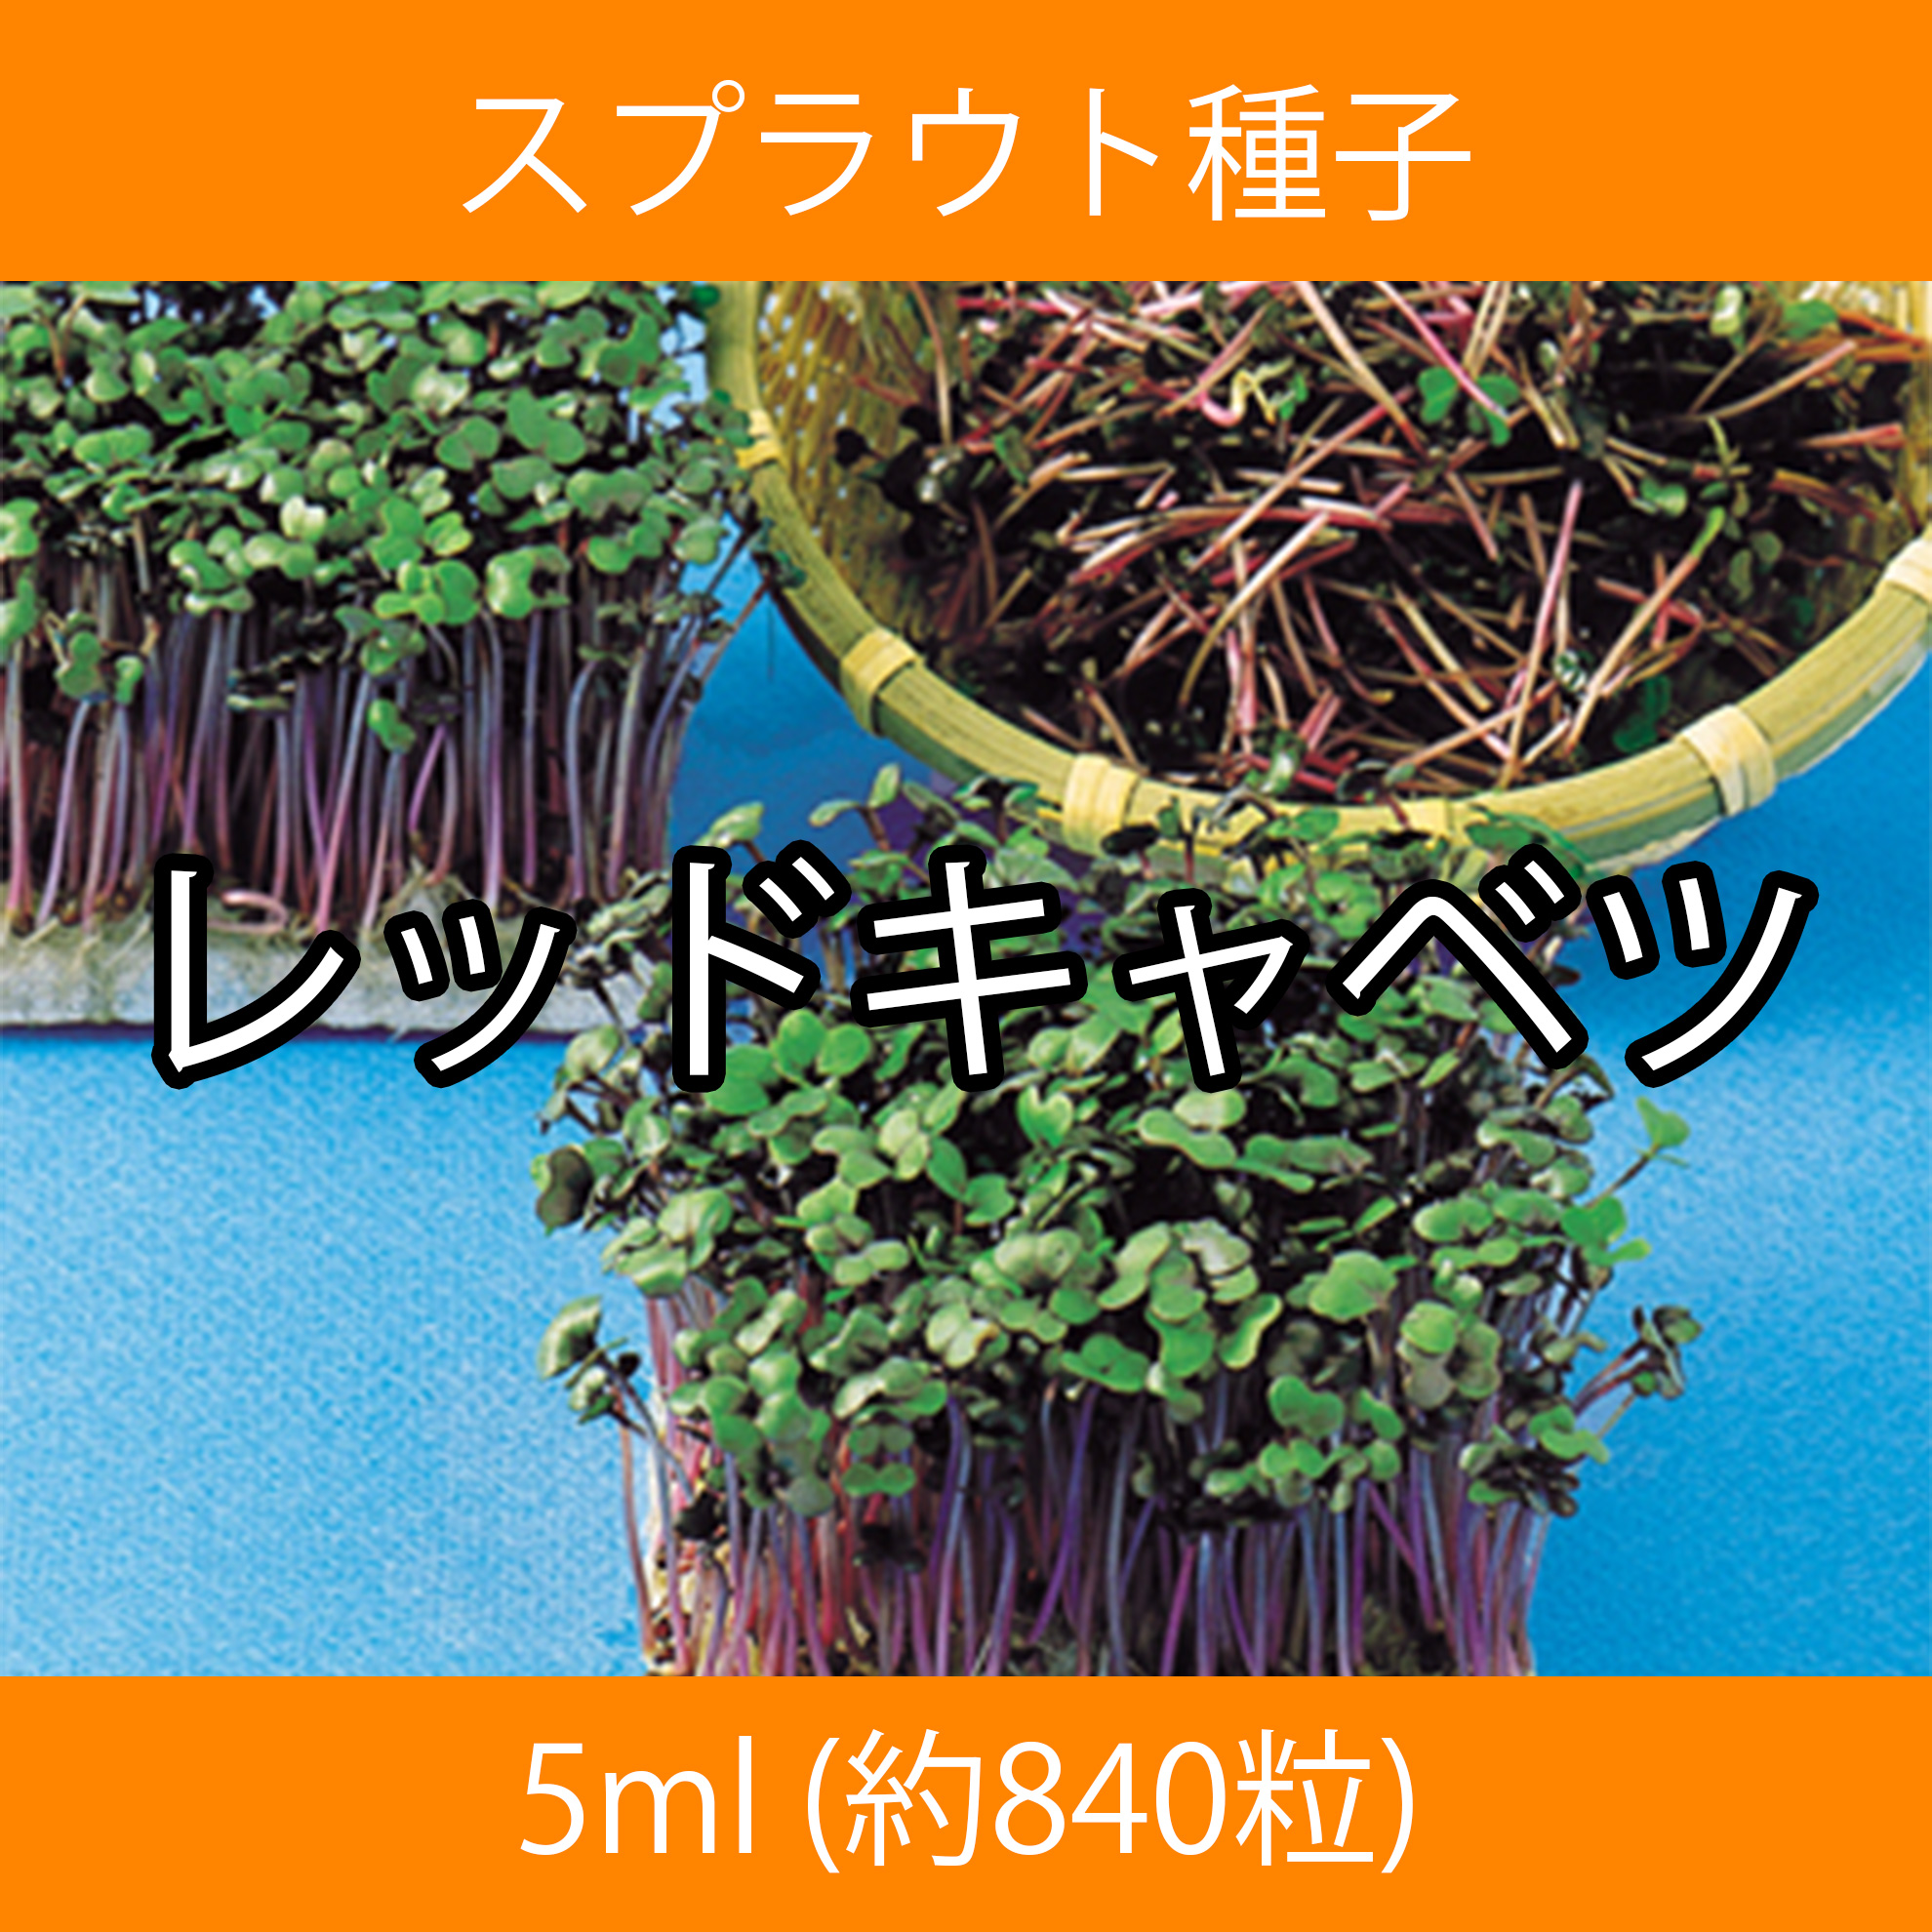 スプラウト種子 S-02 レッドキャベツ 5ml